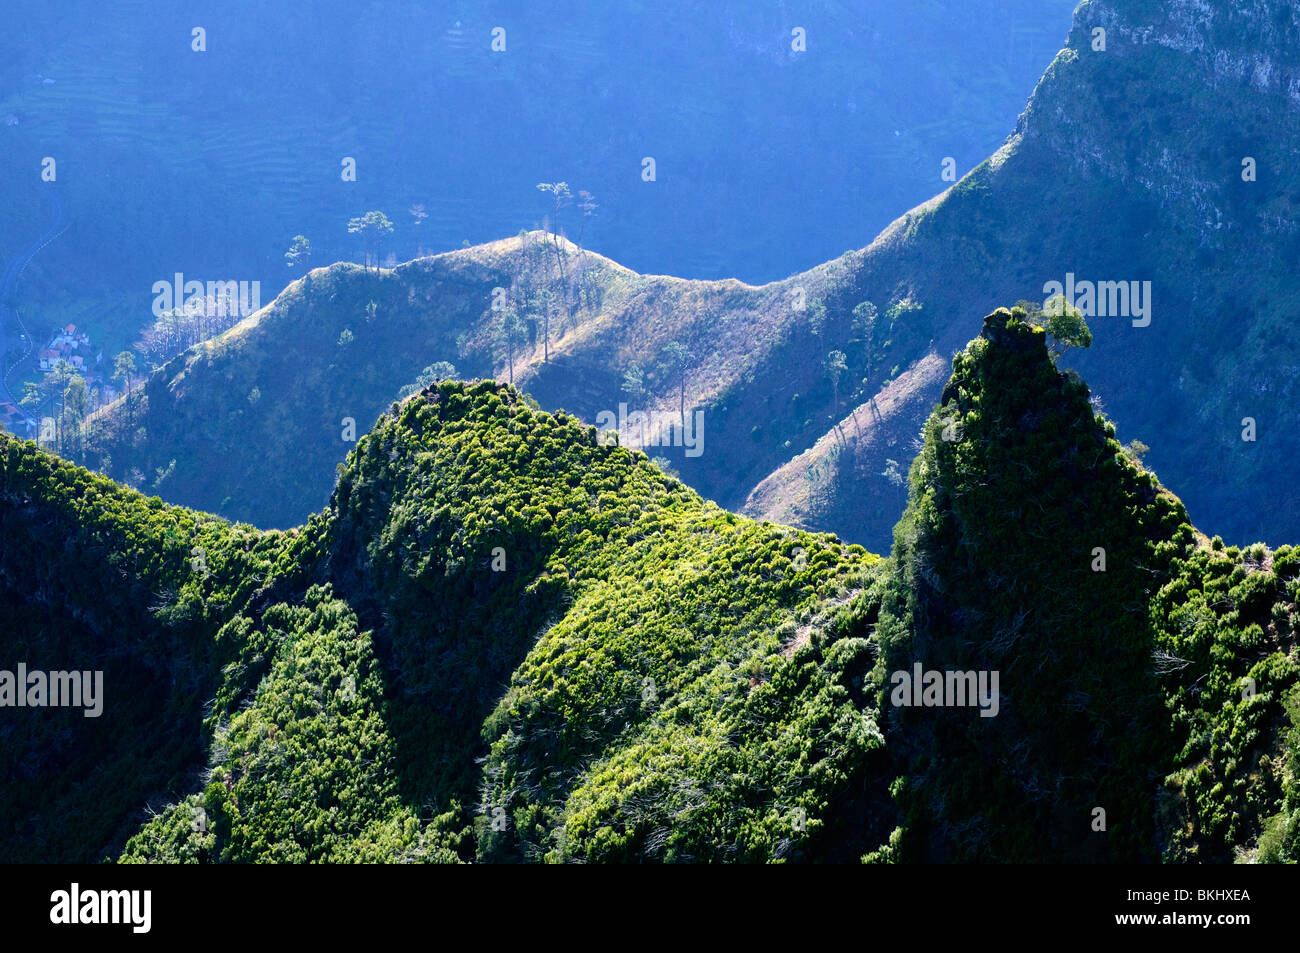 Ma lussureggianti e aspro paesaggio nelle valli sottostanti le vette più alte dell'isola di Madera Foto Stock